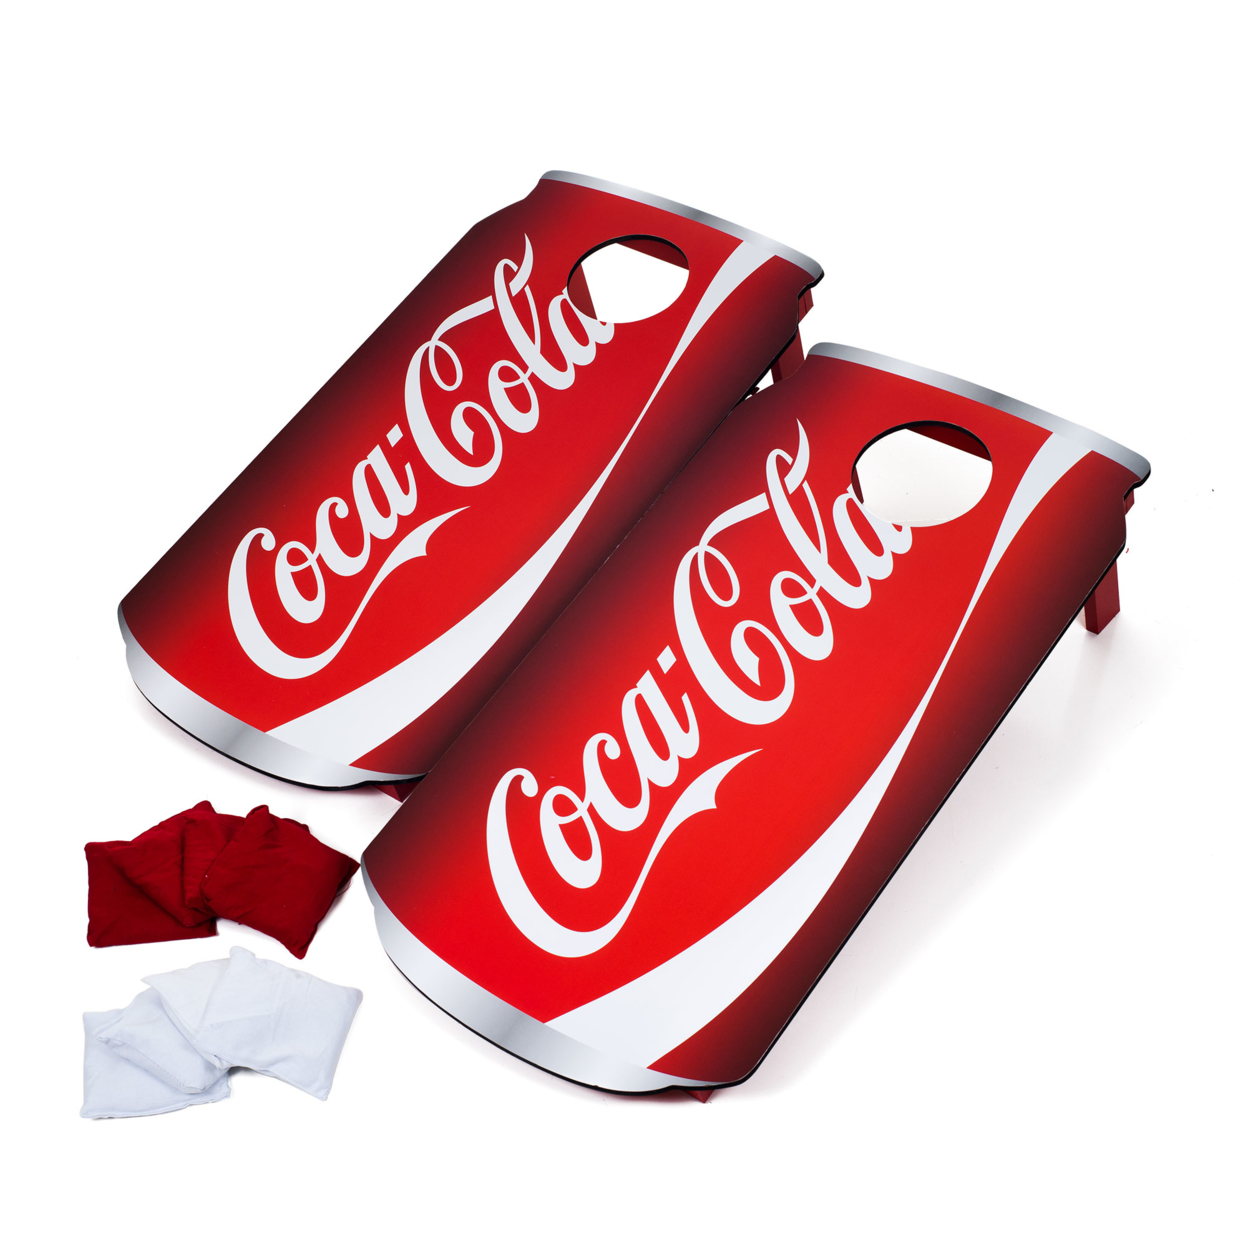 Coca Cola Can Cornhole Set Bean Bag Toss Backyard Game Portable Handles